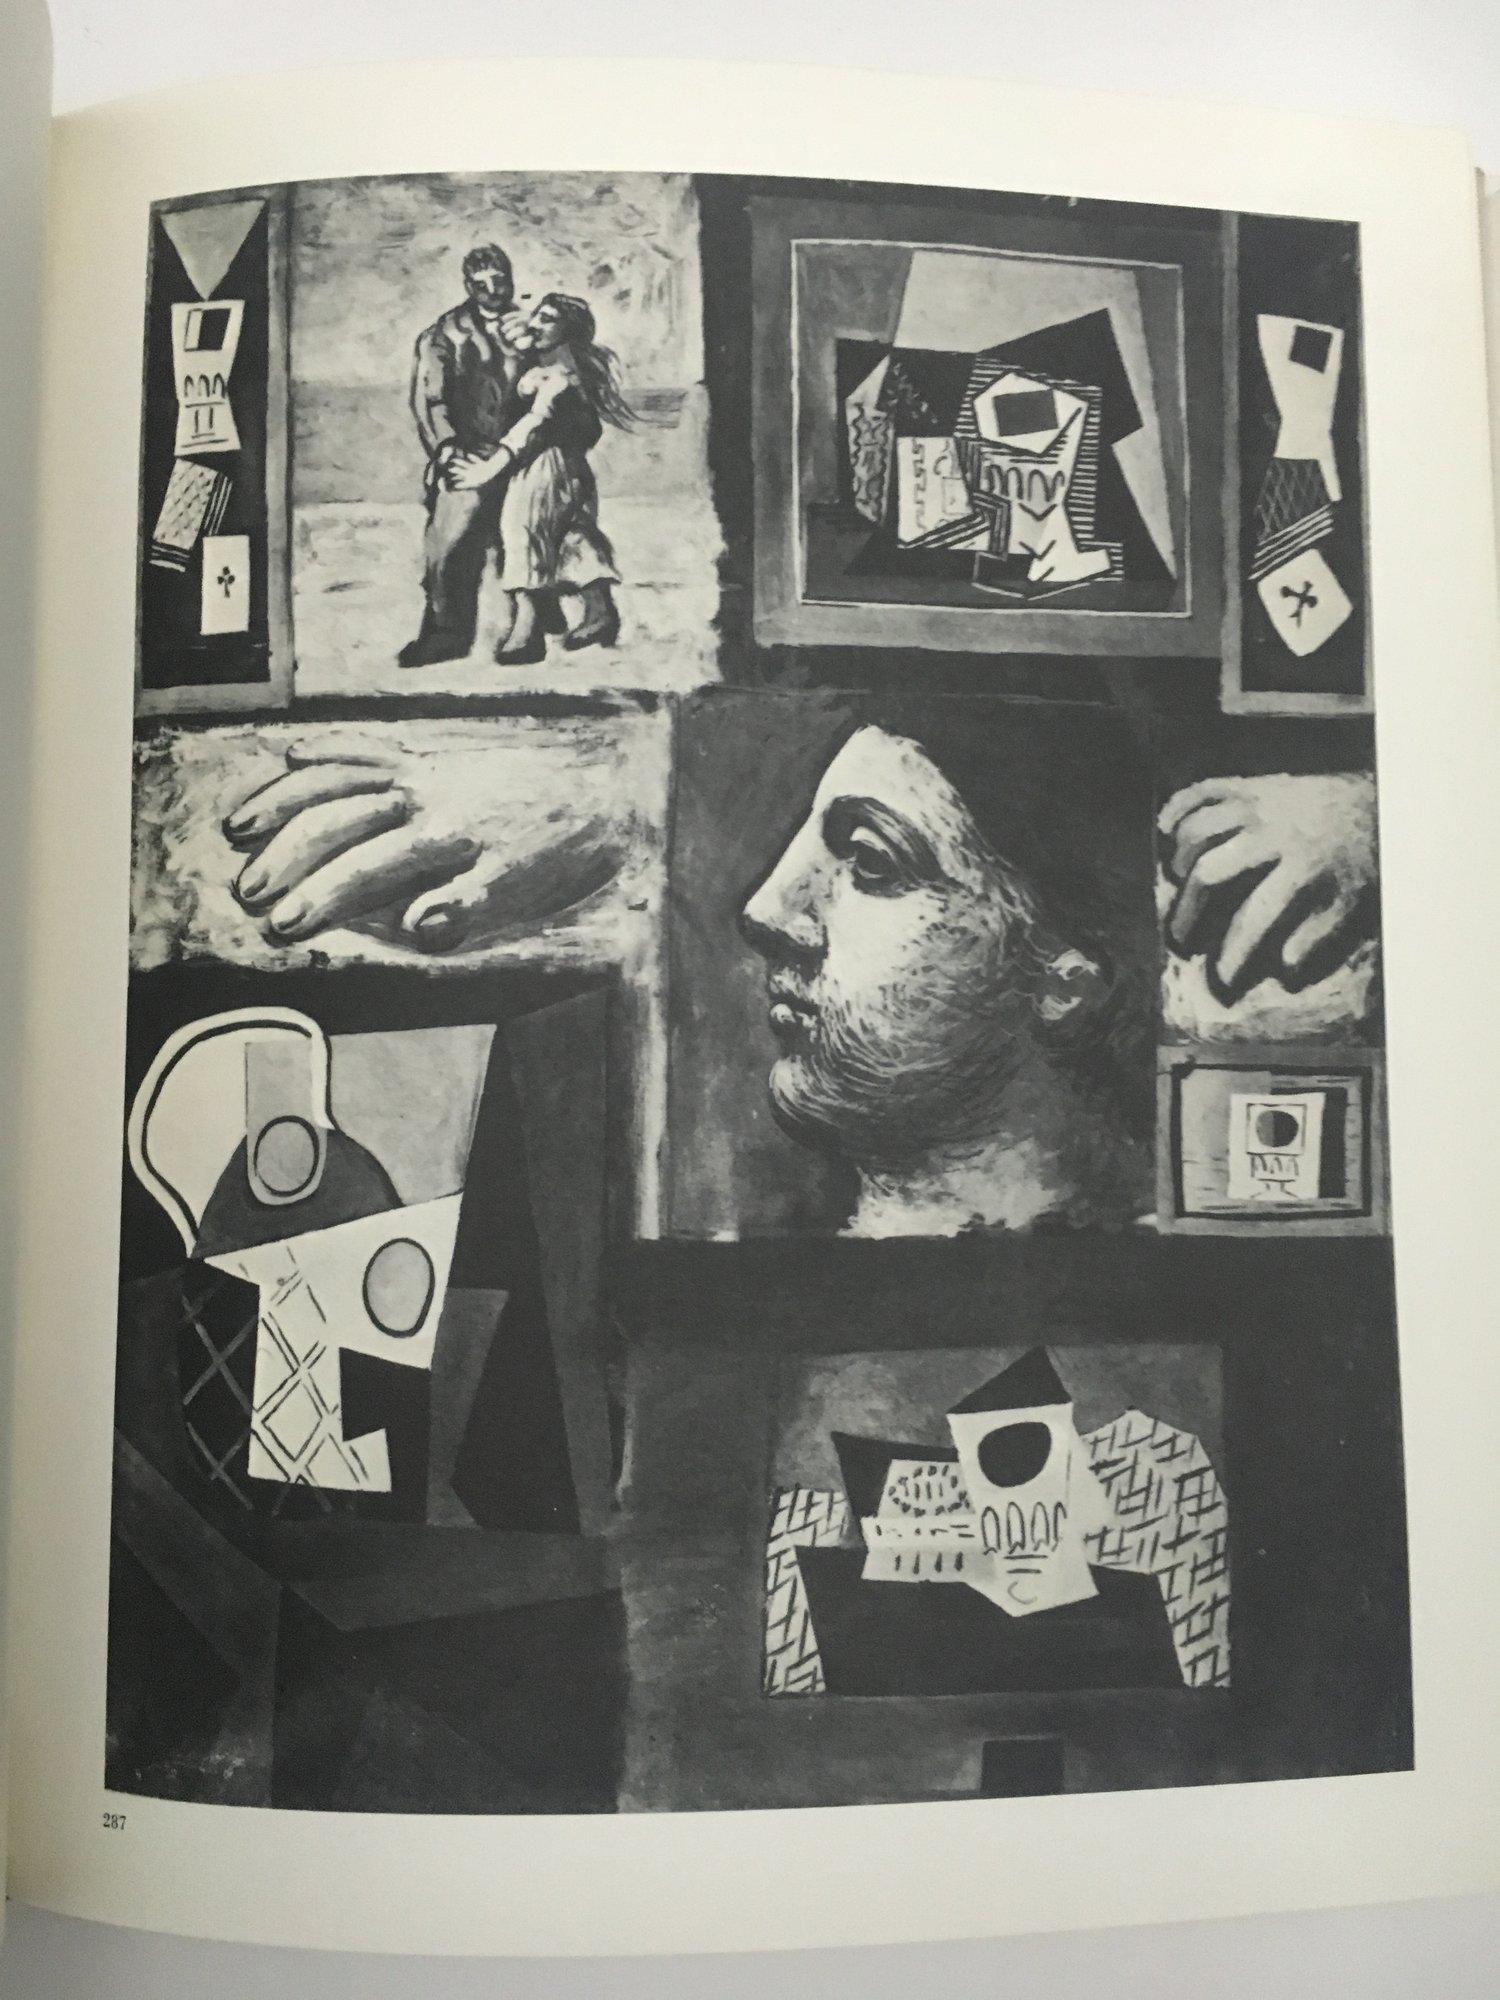 Picasso-Theater von Douglas Cooper, 1. Auflage, Circle D'art, Paris 1967 (Mitte des 20. Jahrhunderts)